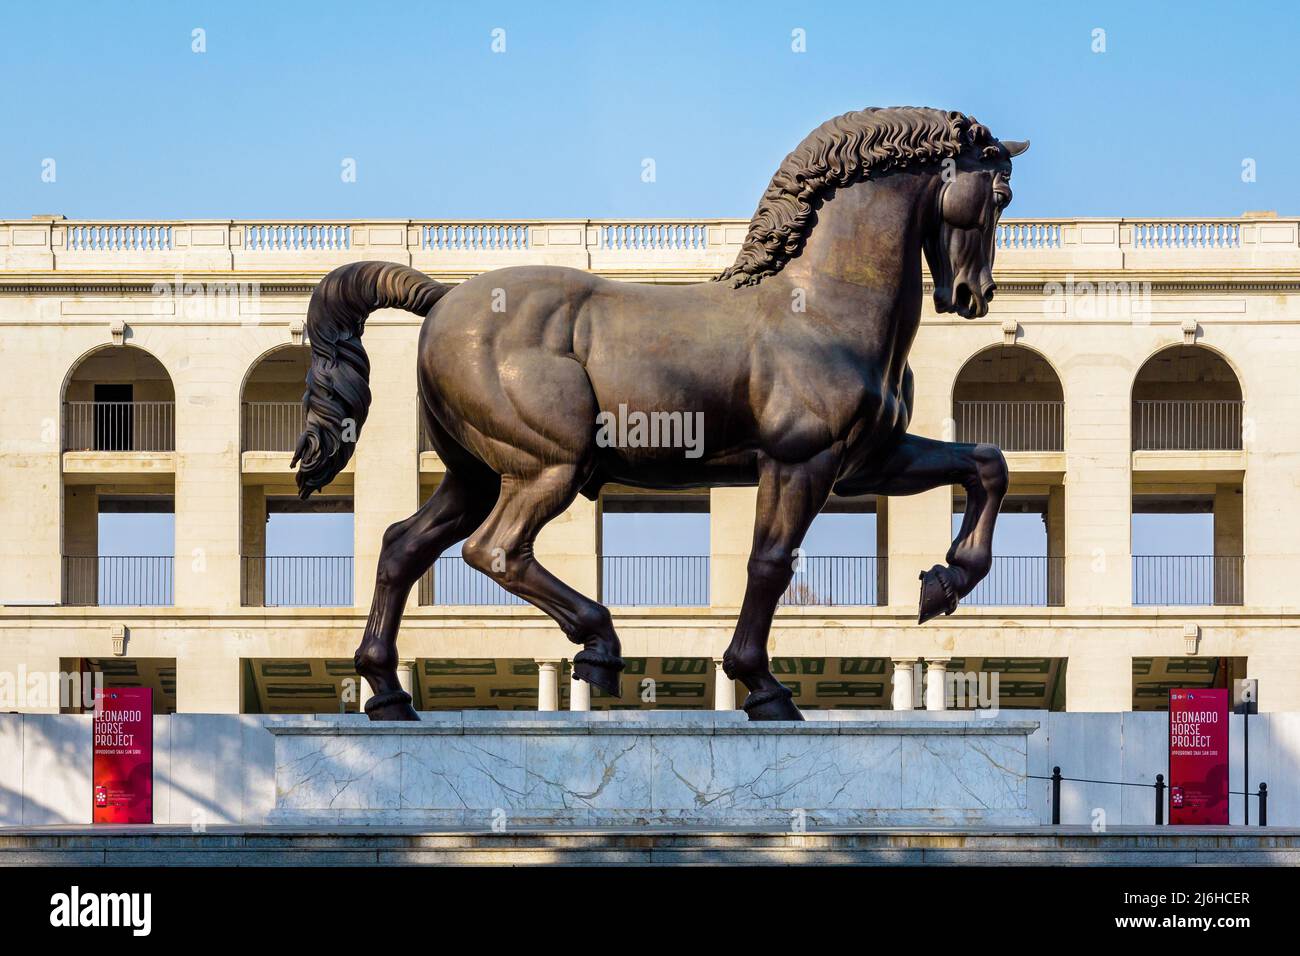 El caballo de Leonardo (Cavallo di Leonardo) es una moderna estatua de bronce después de la obra de Leonardo da Vinci, expuesta en Milán, Italia. Foto de stock